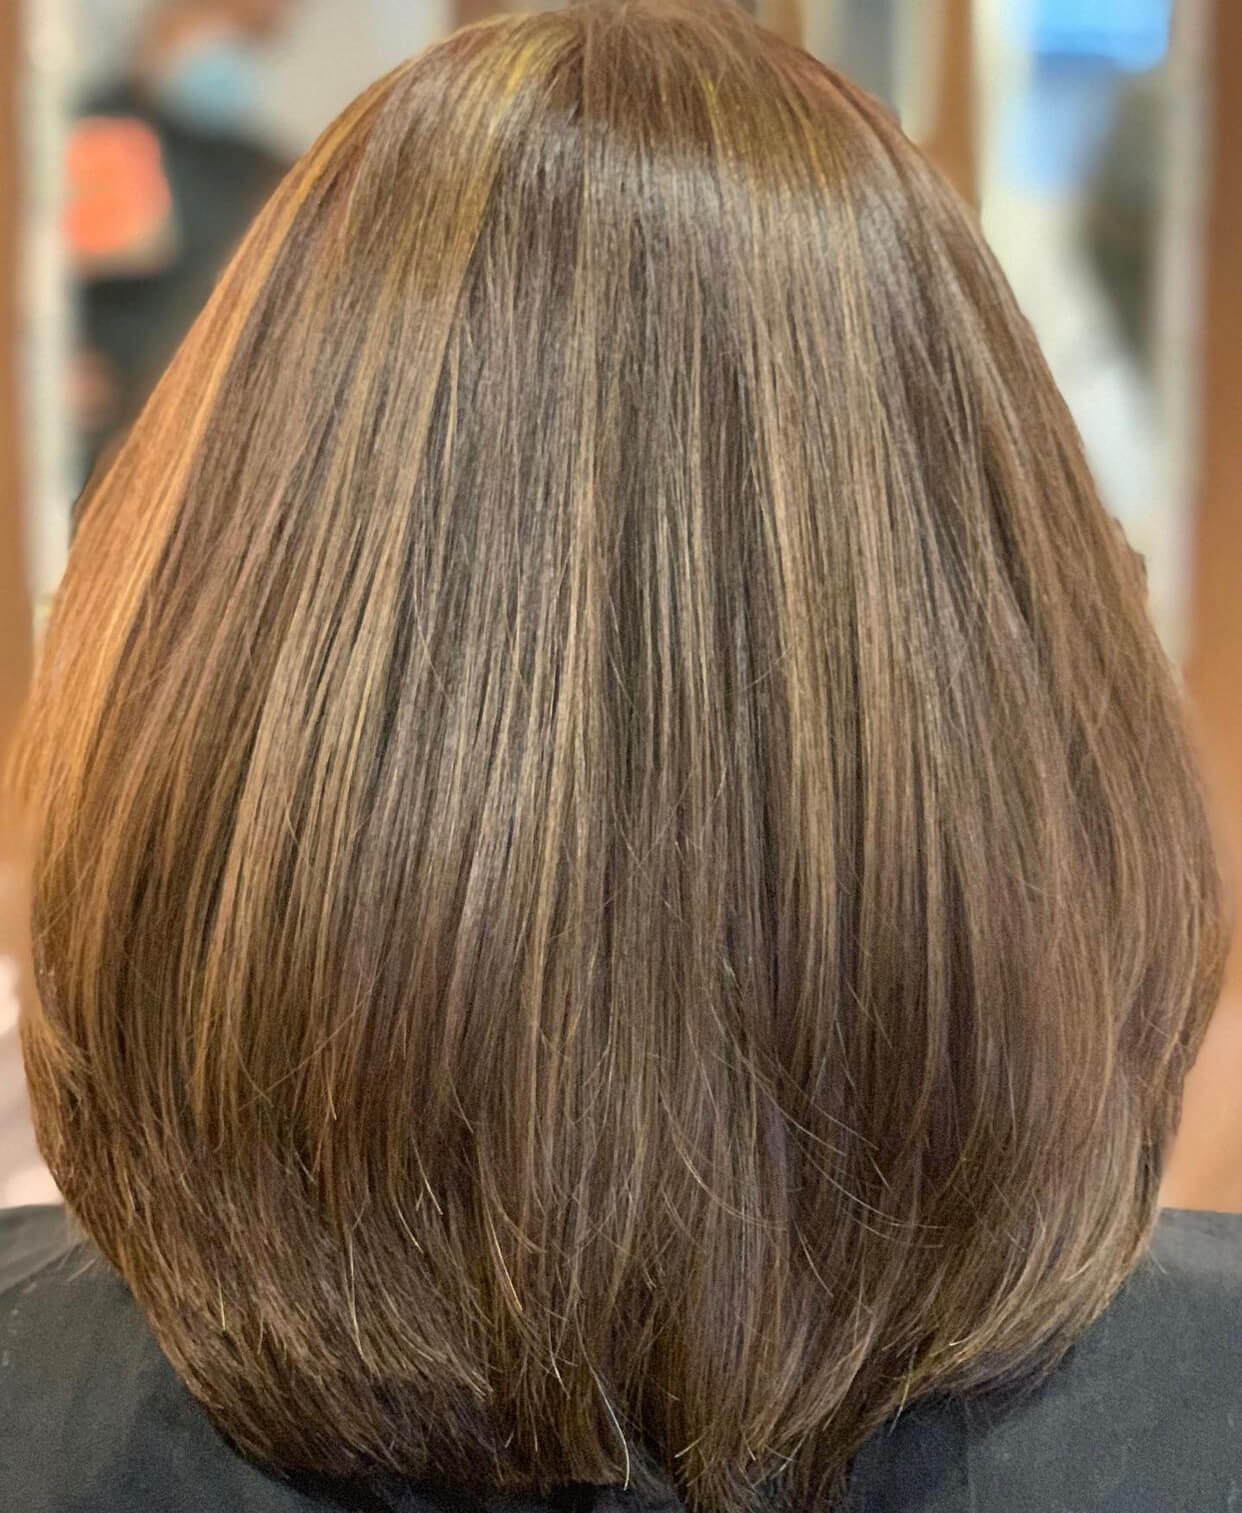 Medium - Hair Color and Highlights + (Hair Treatment OR Haircut by Senior  Stylist)